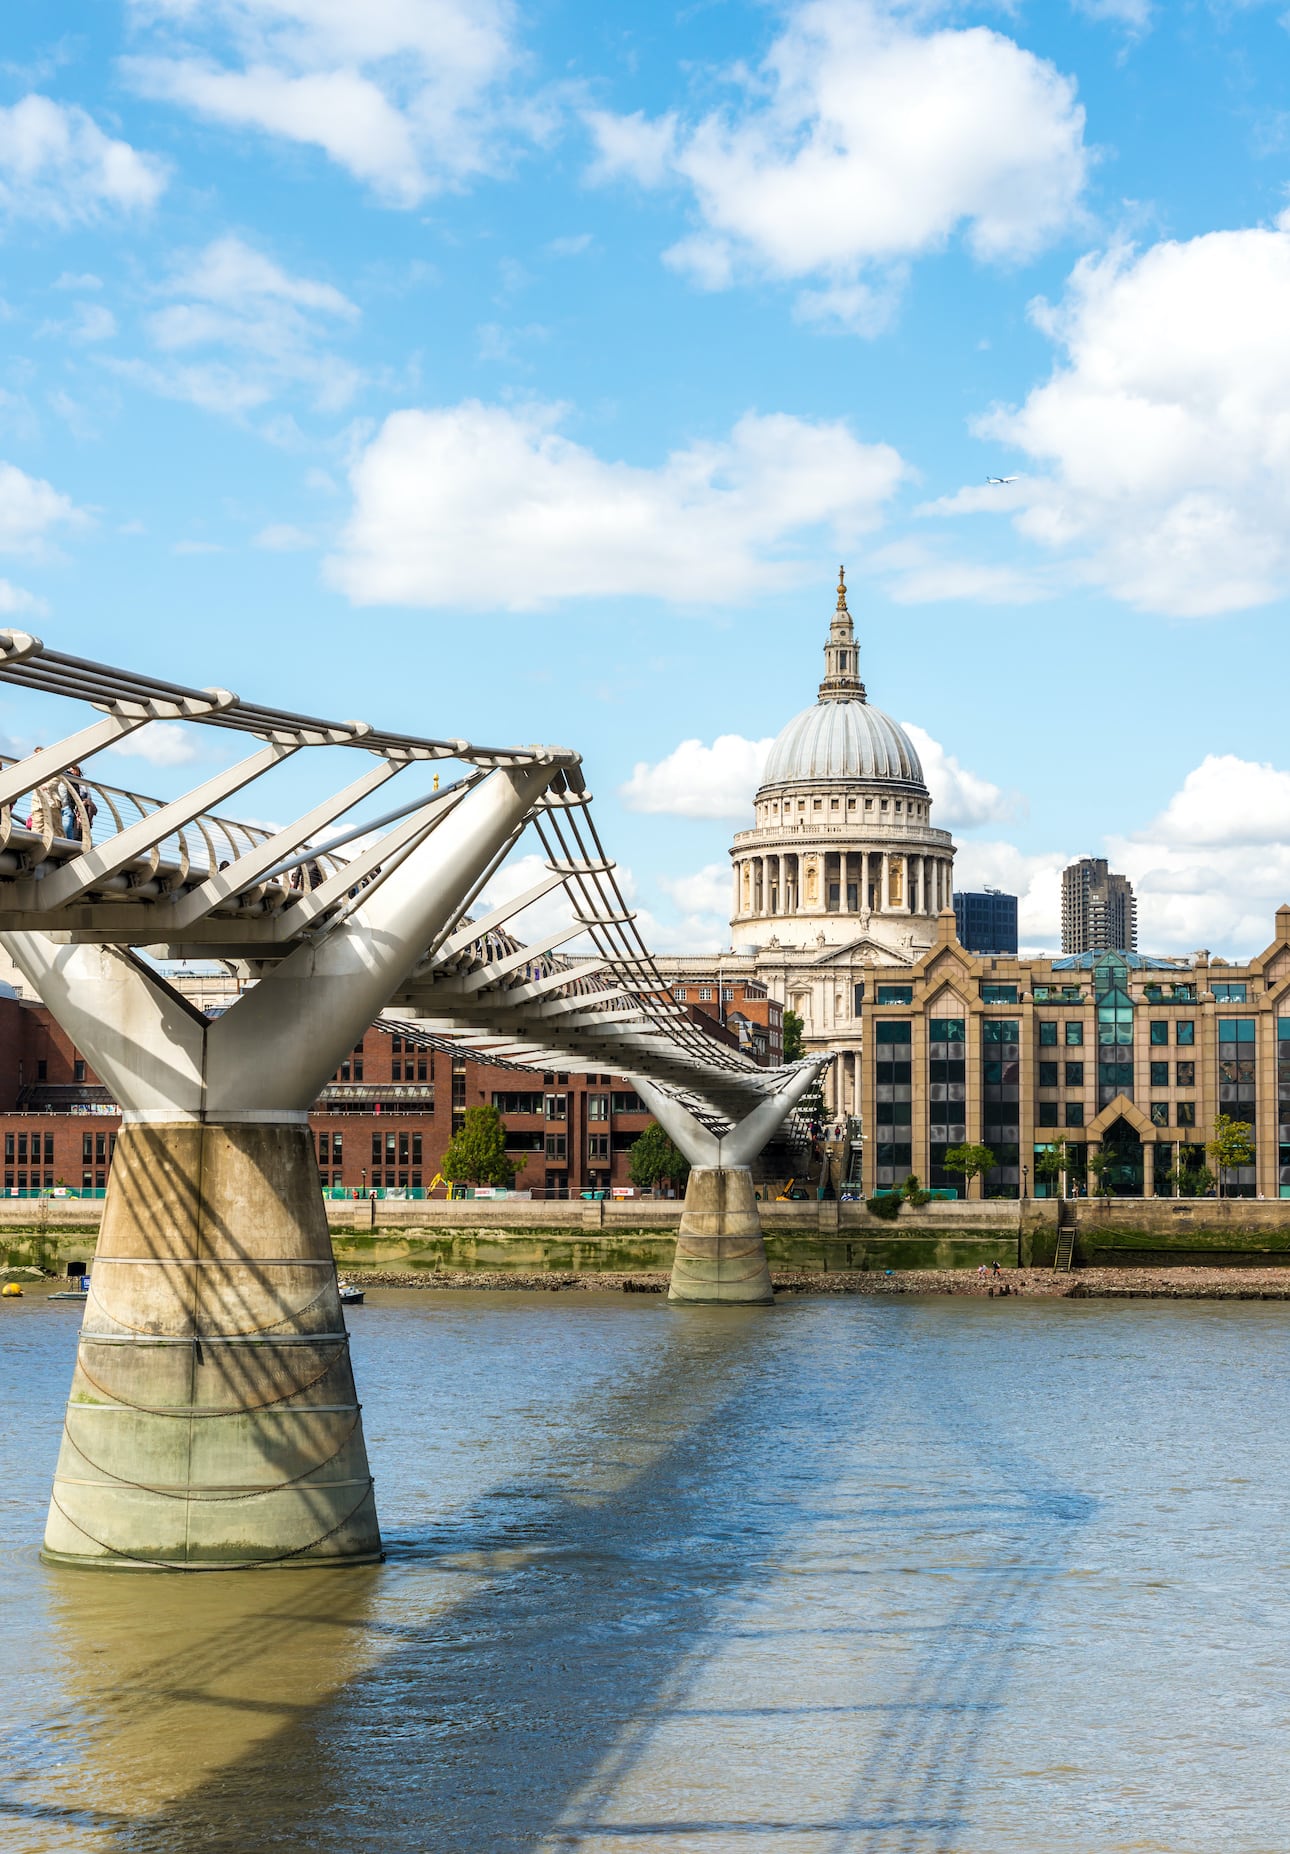 Harry Potter Fans kennen die Millennium Bridge in London